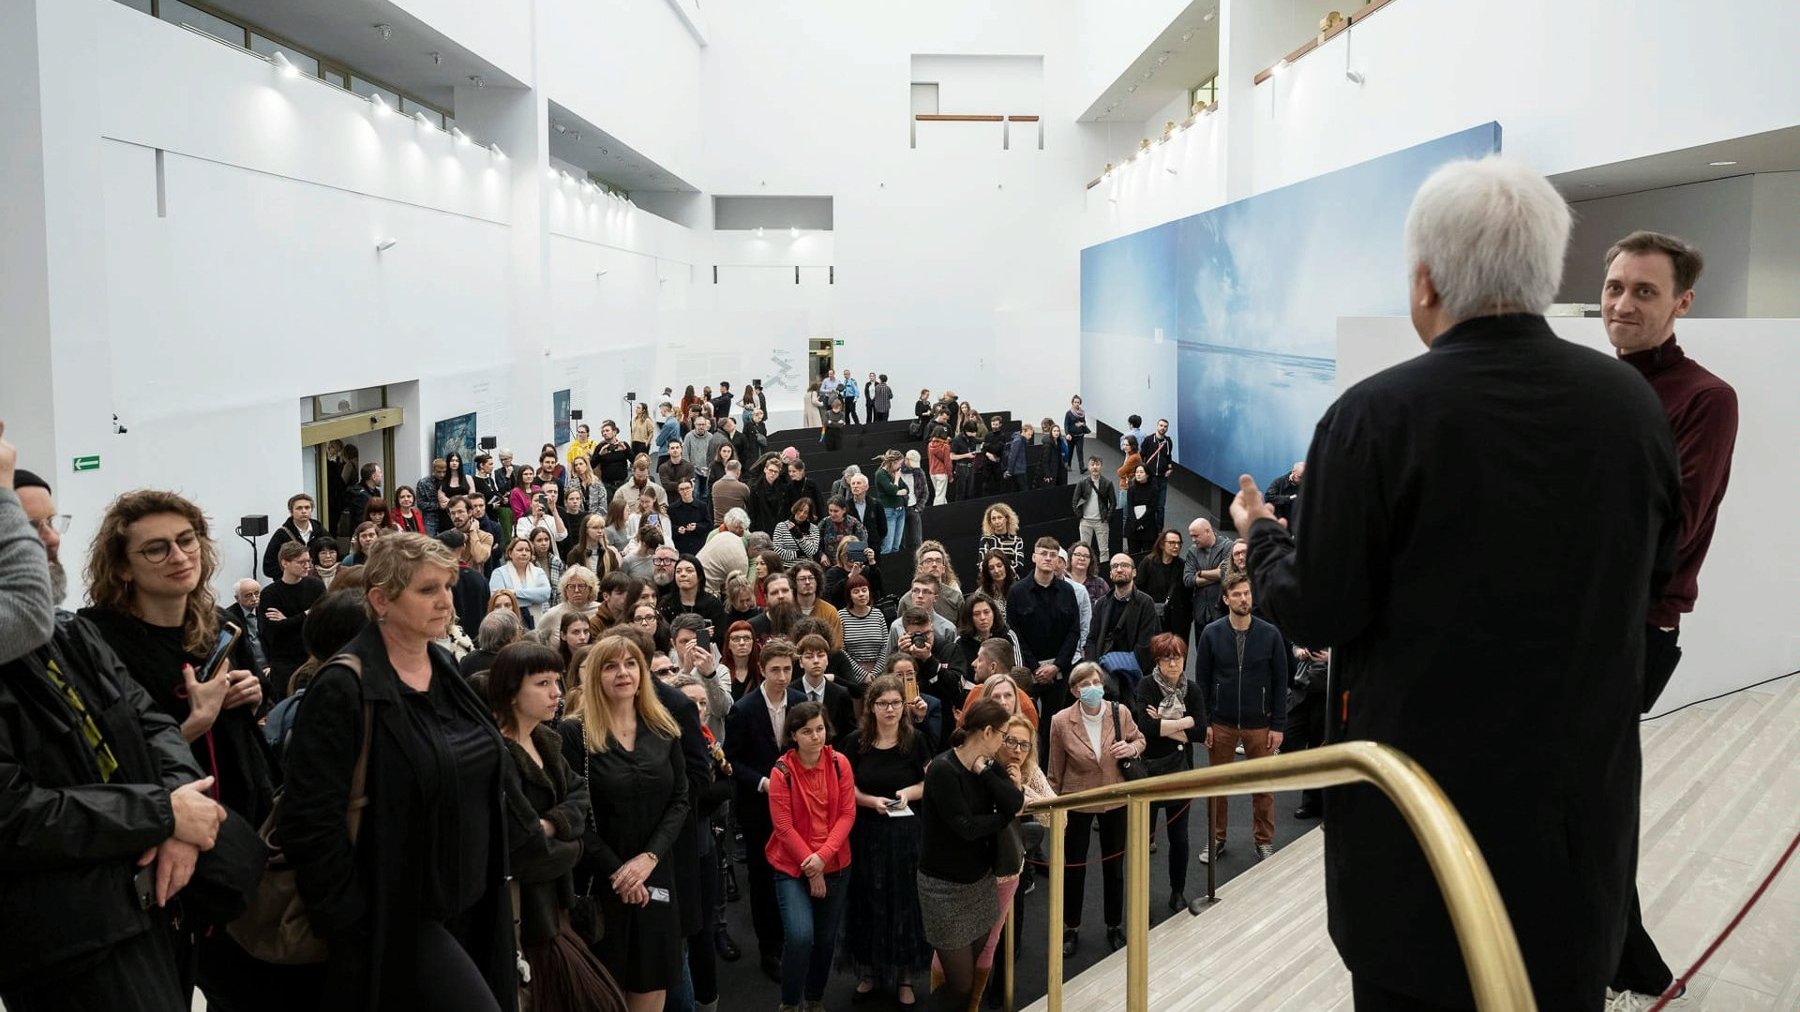 Galeria zdjęć przedstawia grupę ludzi stojąch w przestrzeni wystawienniczej w Muzeum Narodowym w Poznaniu.